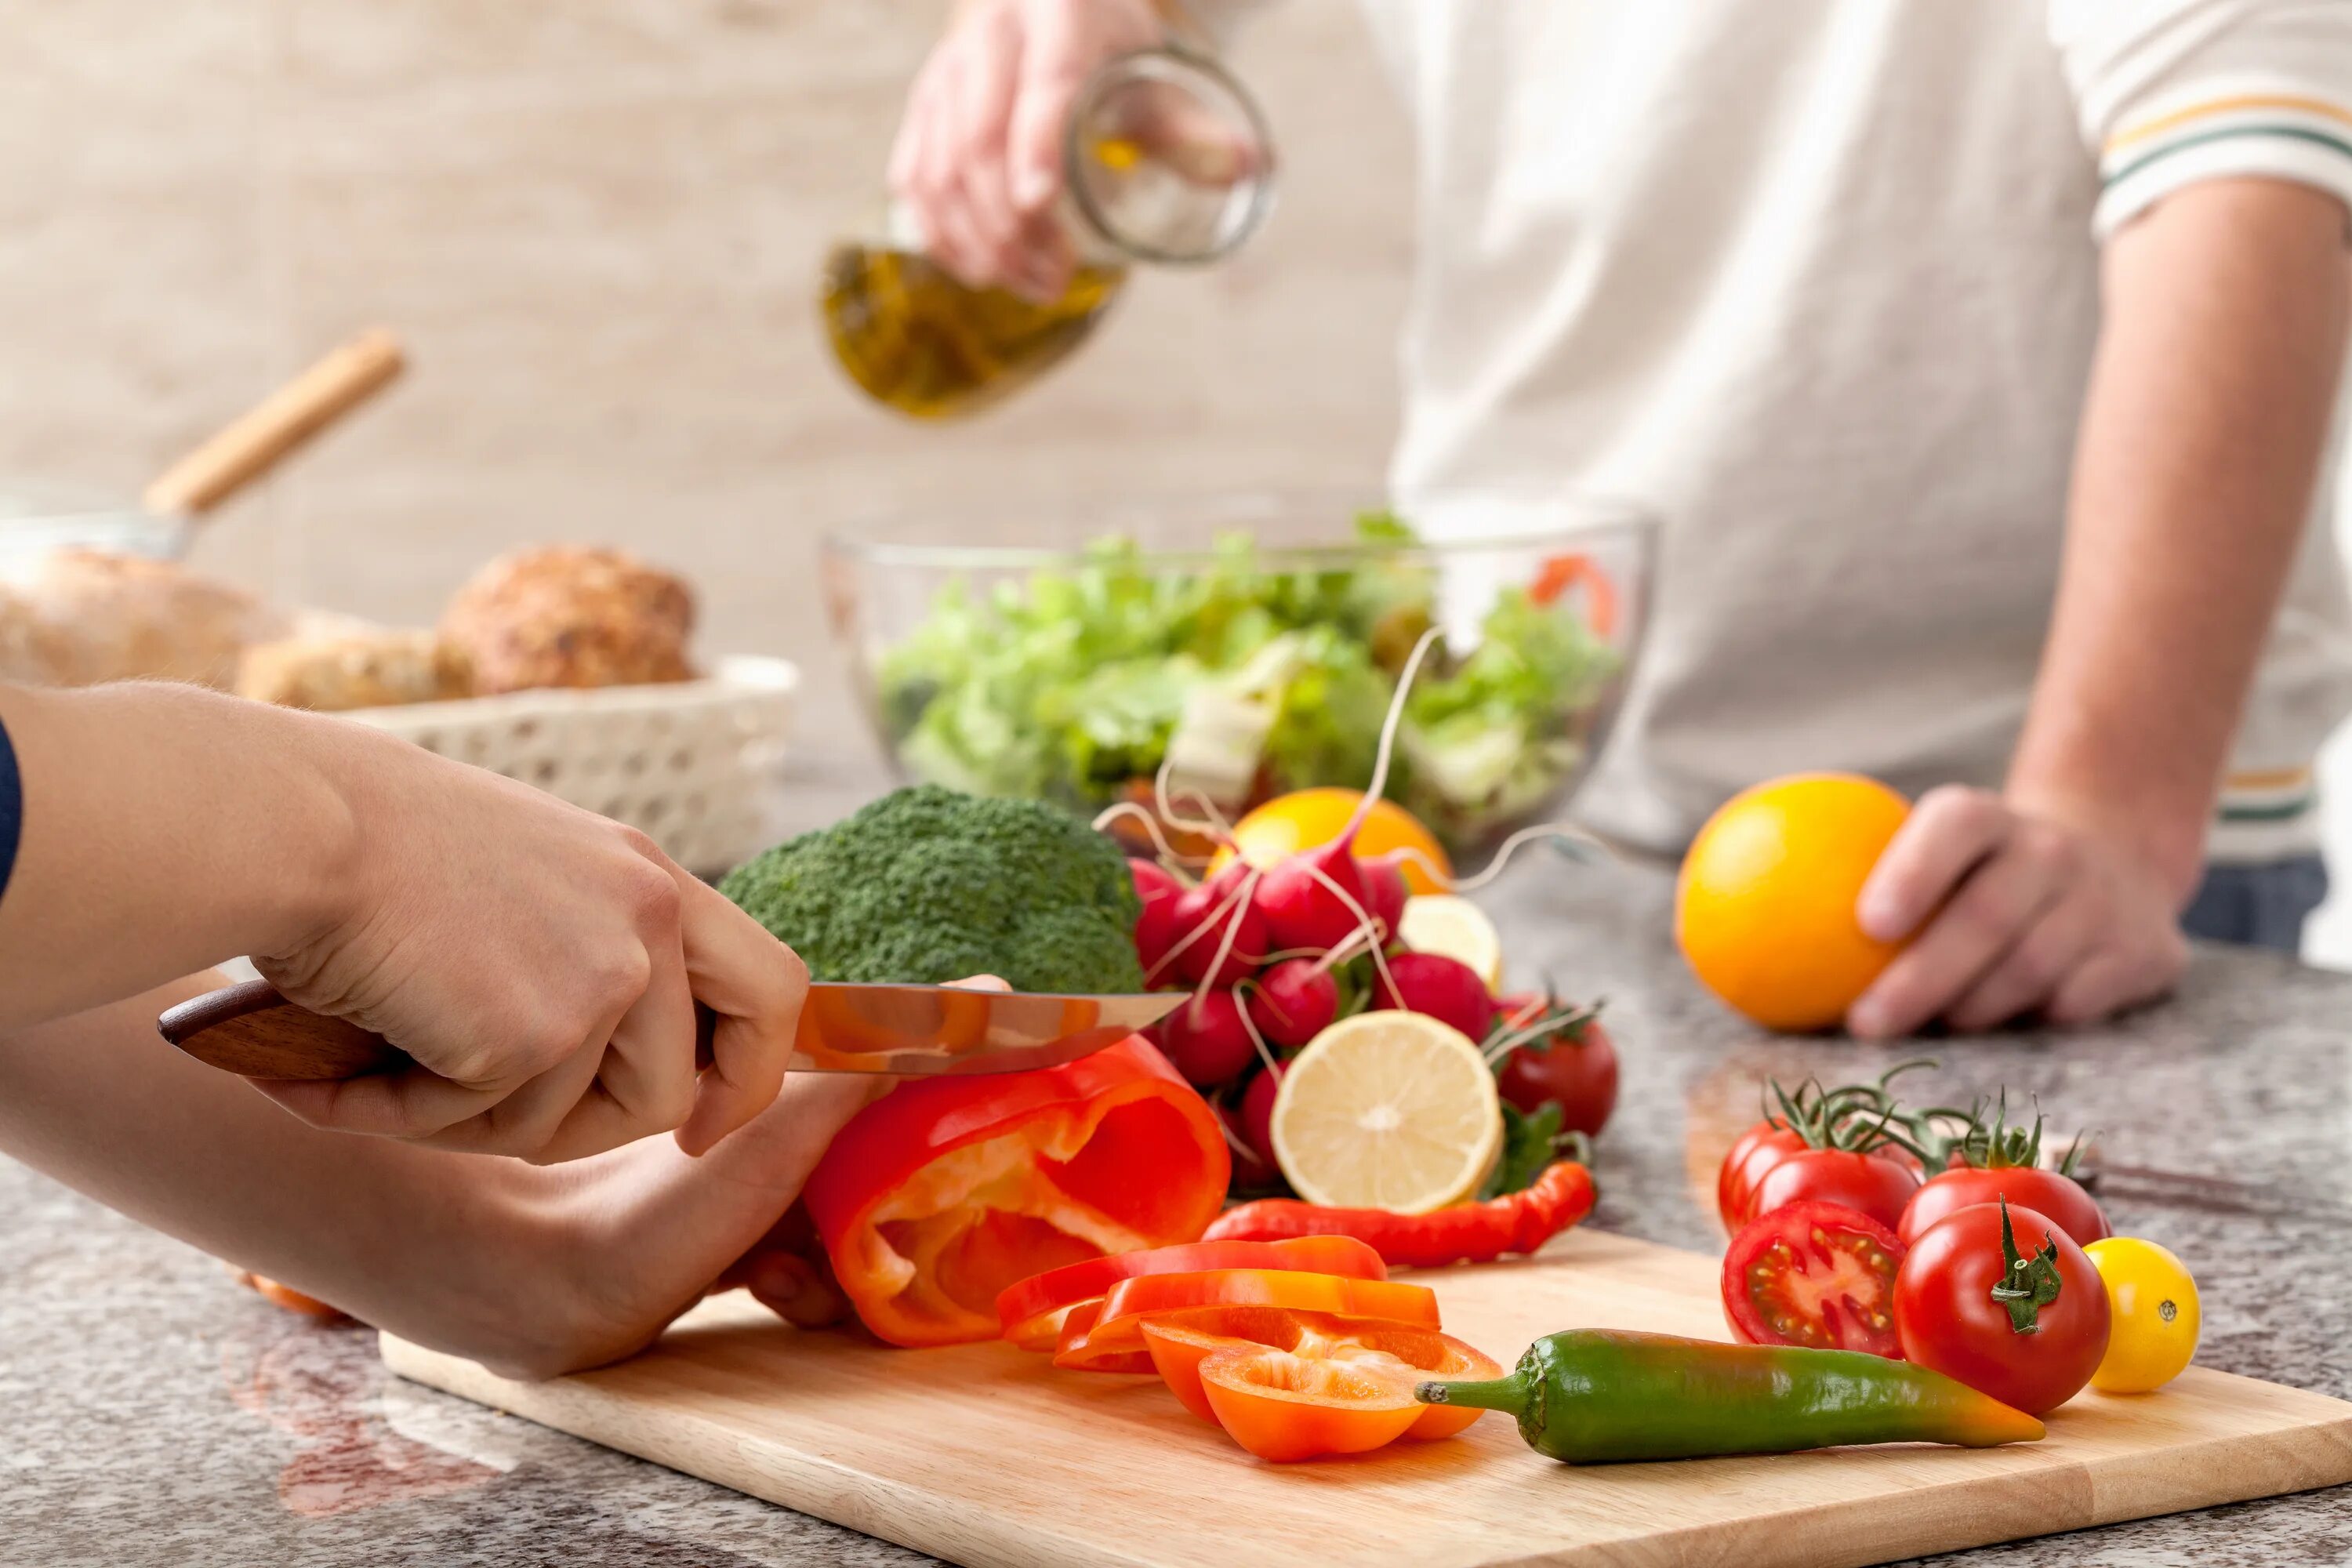 Cutting vegetables. Лечебные диеты. Профилактика здорового питания. Пища основа жизни человека. Лечебное питание.